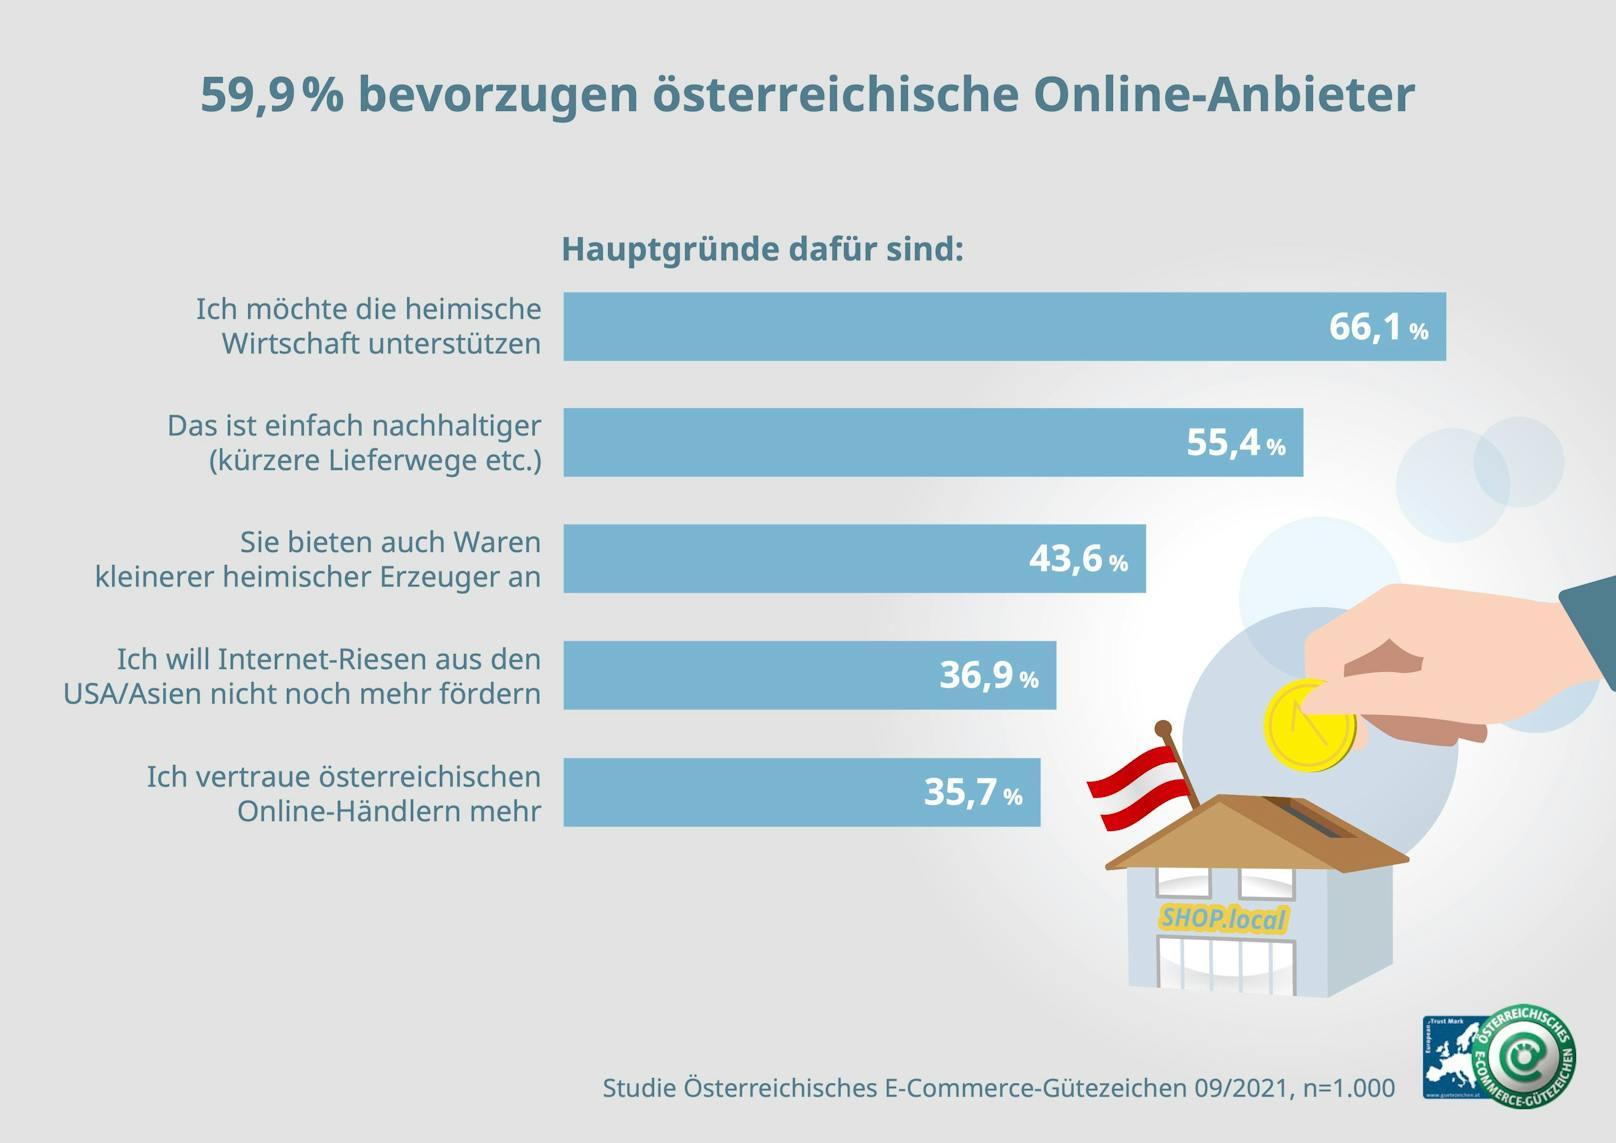 59,9 % bevorzugen heimische Online-Anbieter – Top-Grund ist, dass sie die heimische Wirtschaft unterstützen wollen.